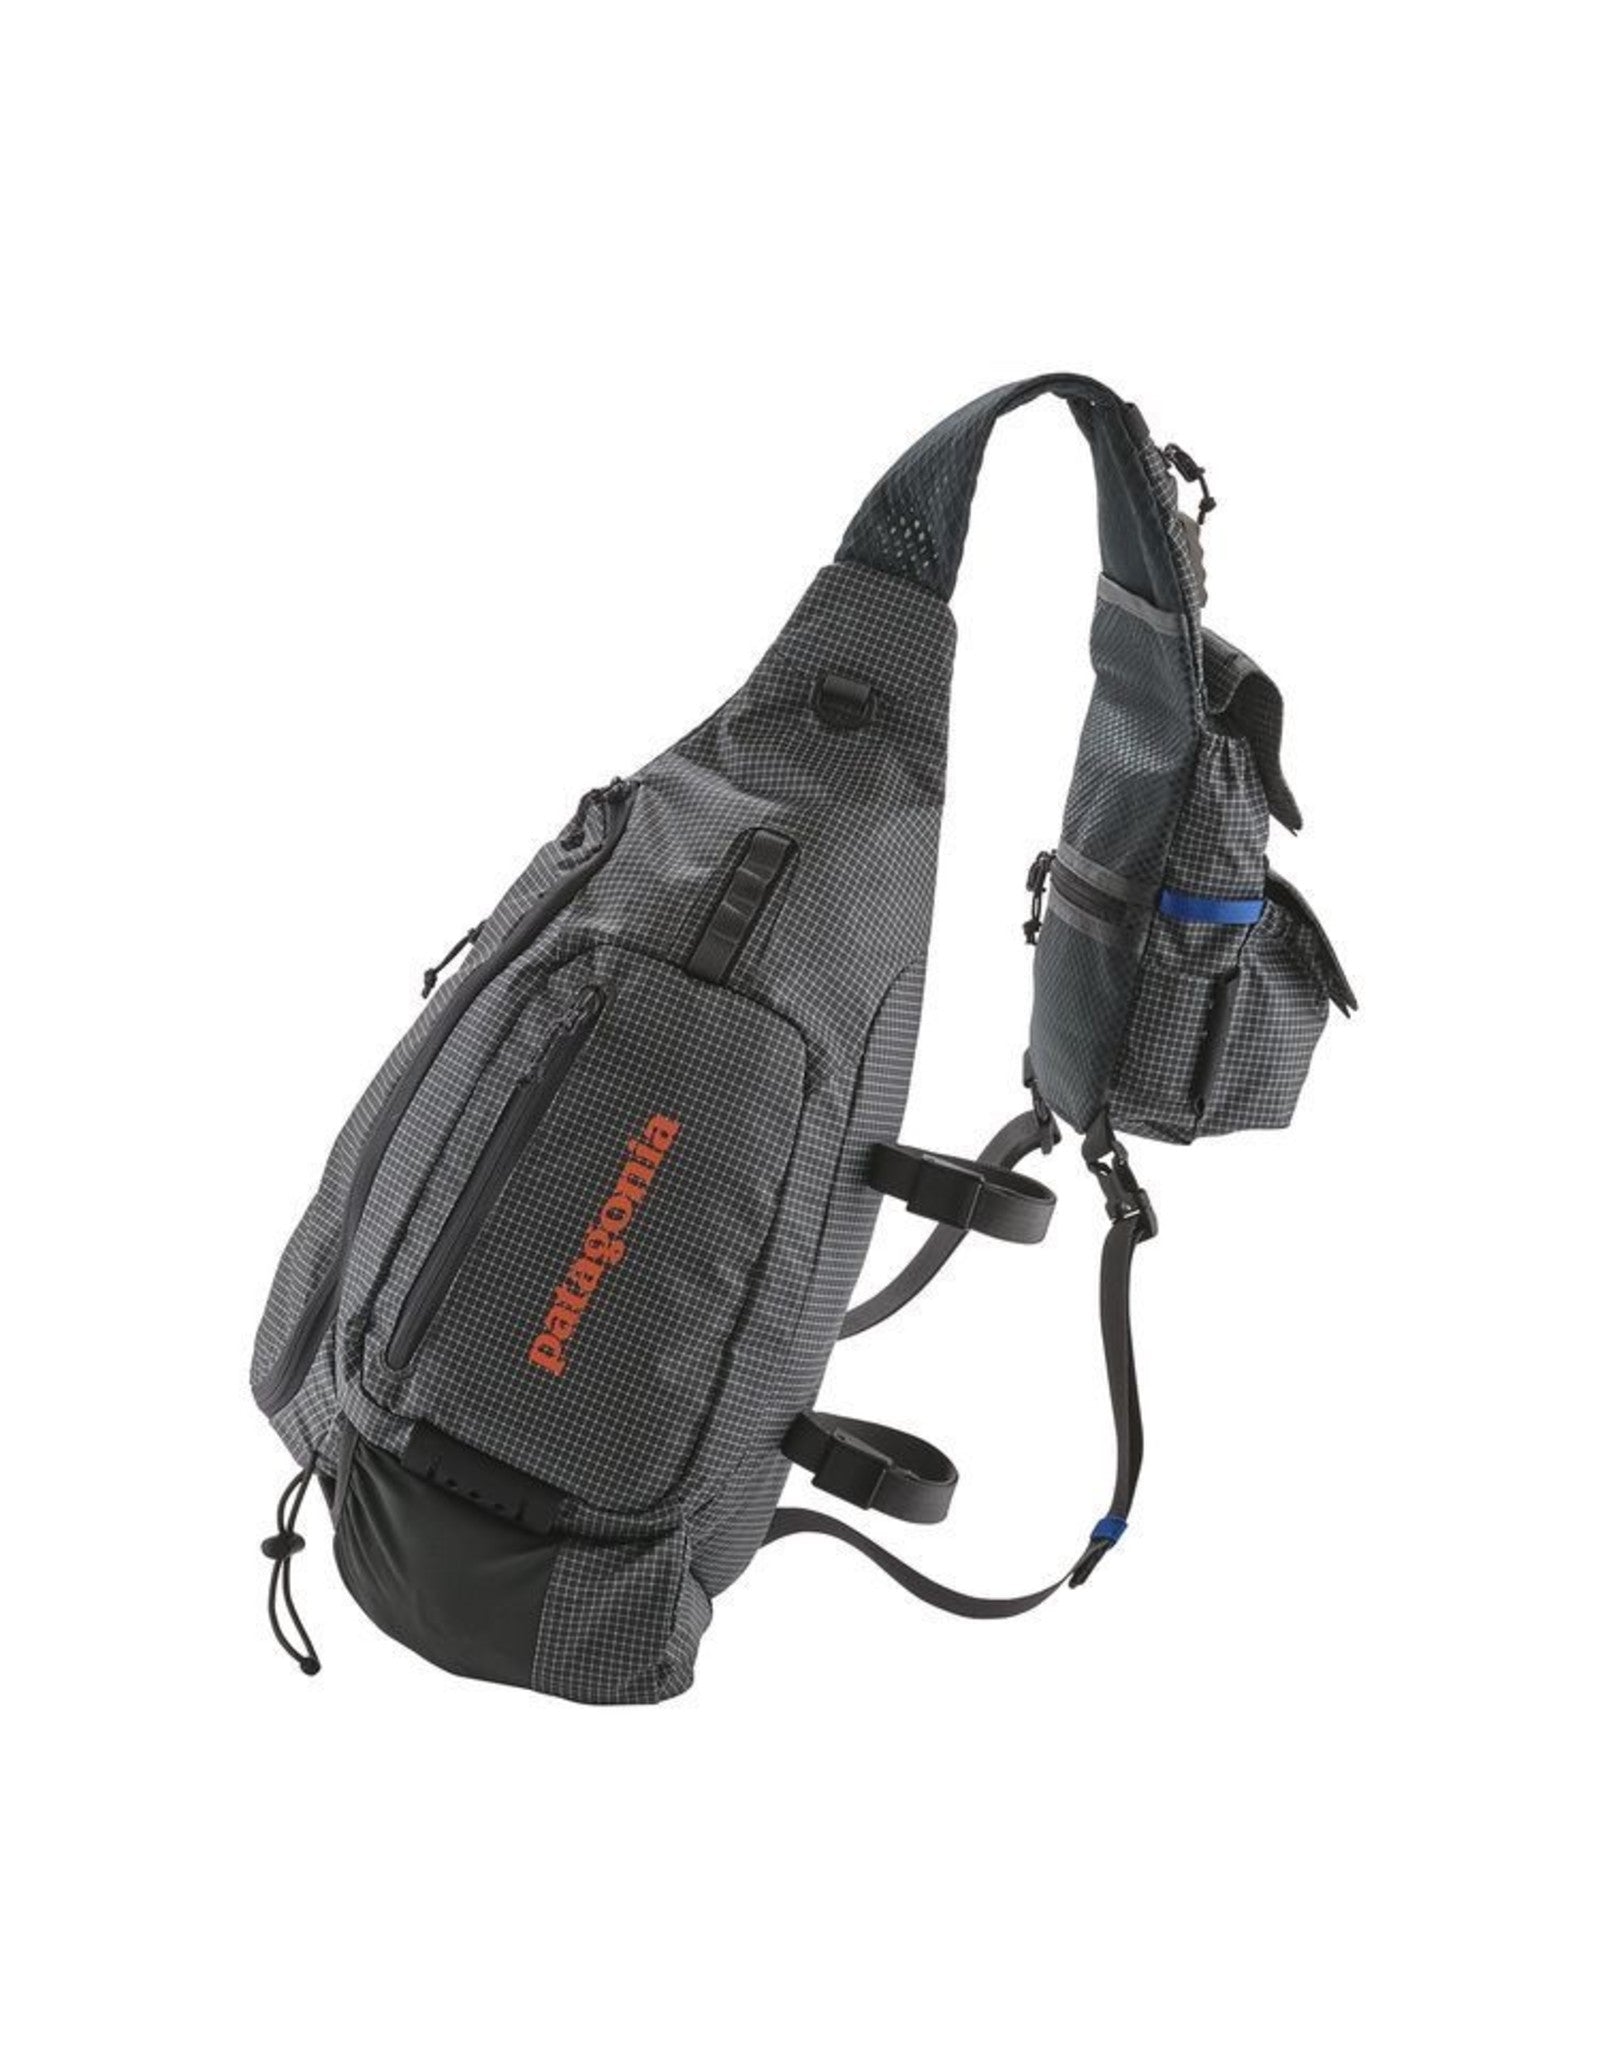 Patagonia® Stealth Pack Vest 